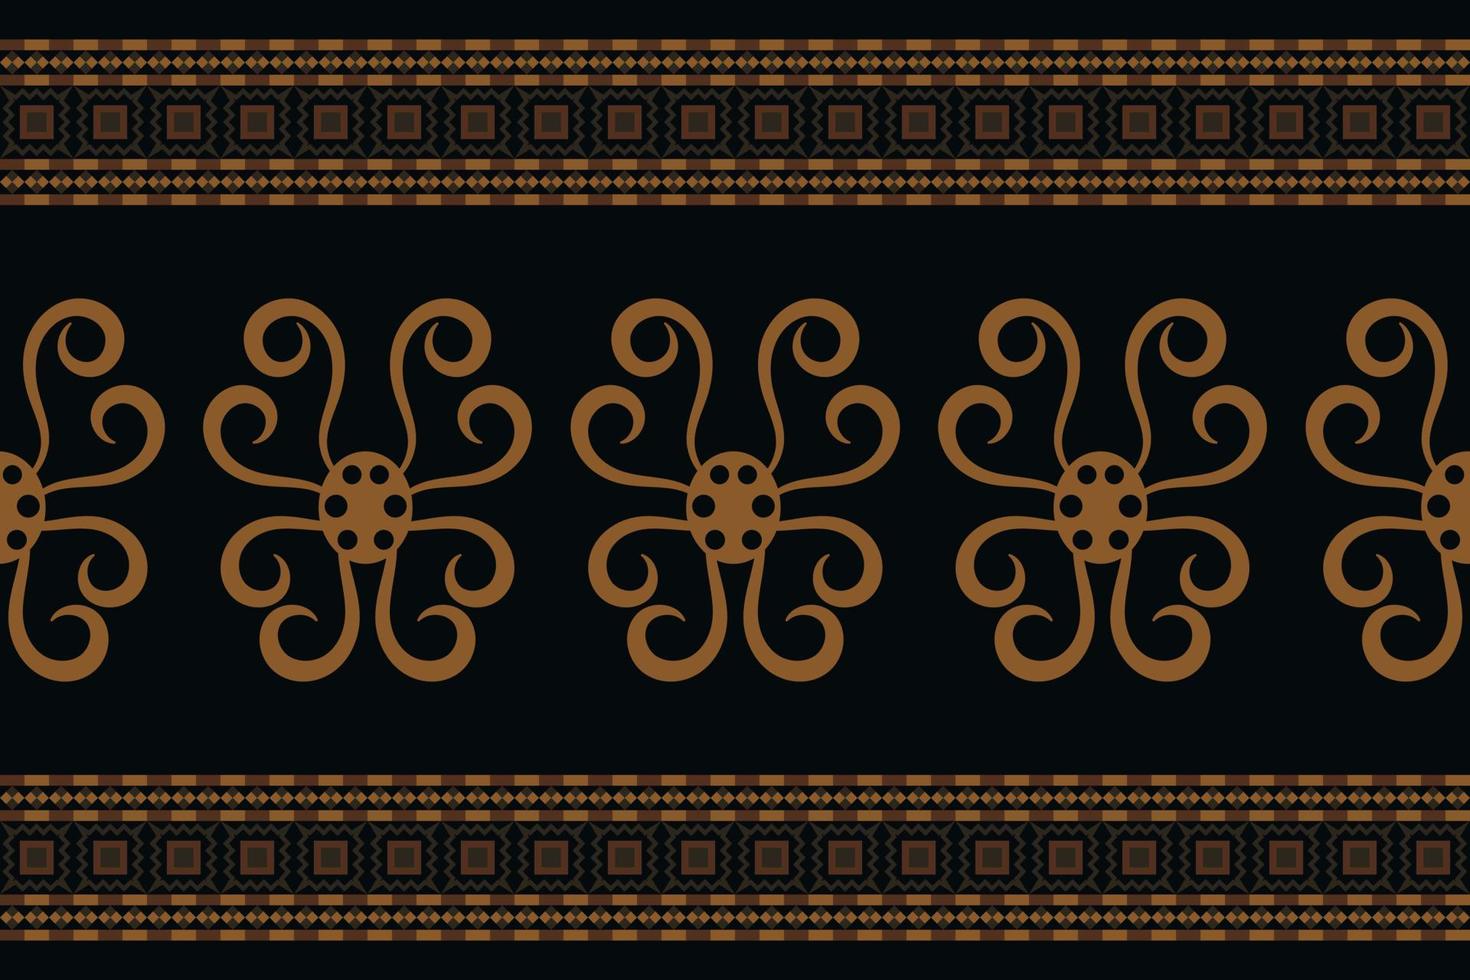 estilo geométrico padrão de tecido étnico. sarong asteca étnico padrão oriental tradicional fundo preto escuro. resumo,vetor,ilustração. use para textura, roupas, embrulhos, decoração, carpete. vetor